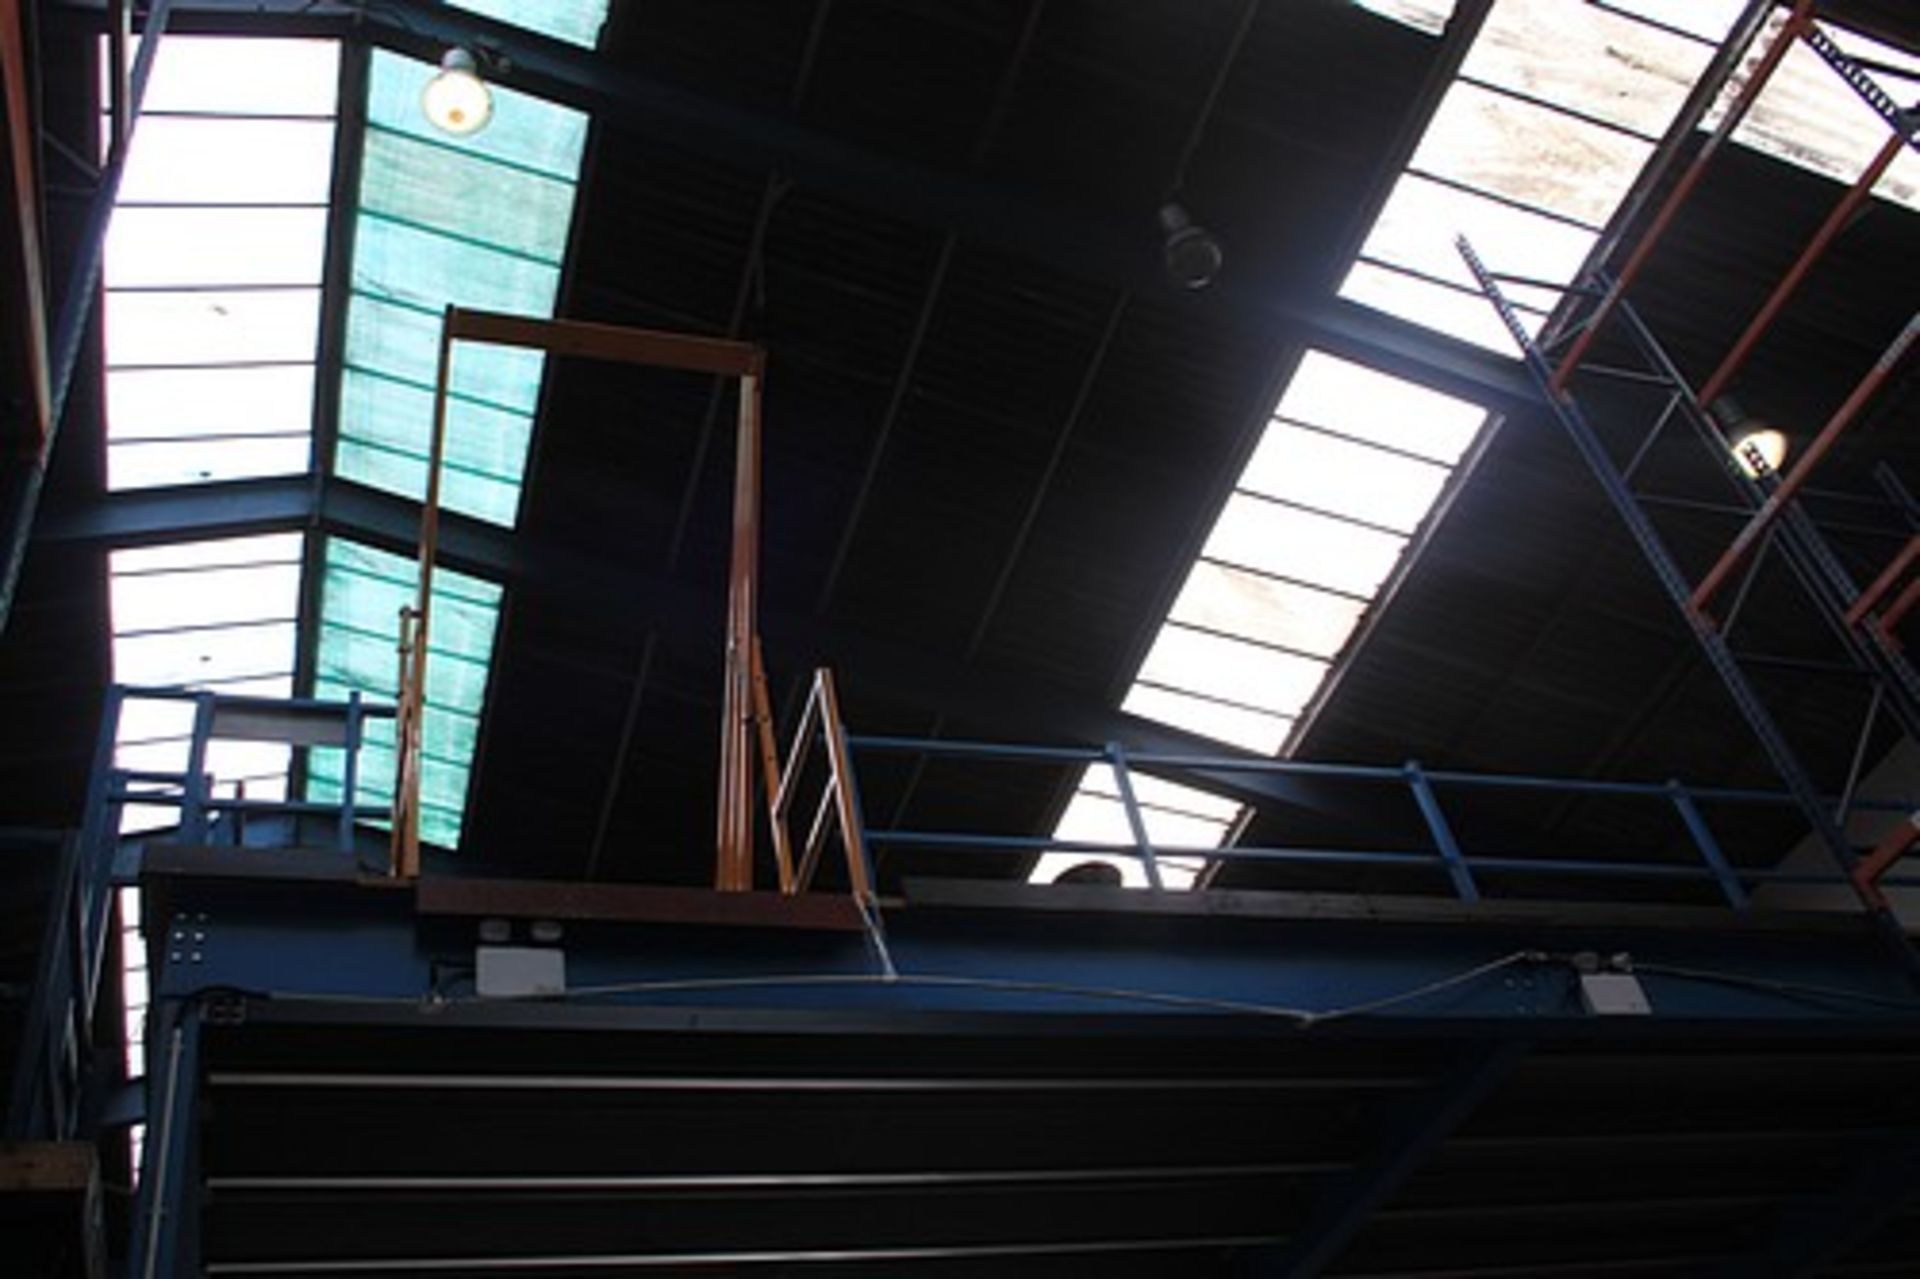 Powerdeck Mezzanine Floors - mezzanine steel floor decked in high density board with pallet loader - Image 4 of 10